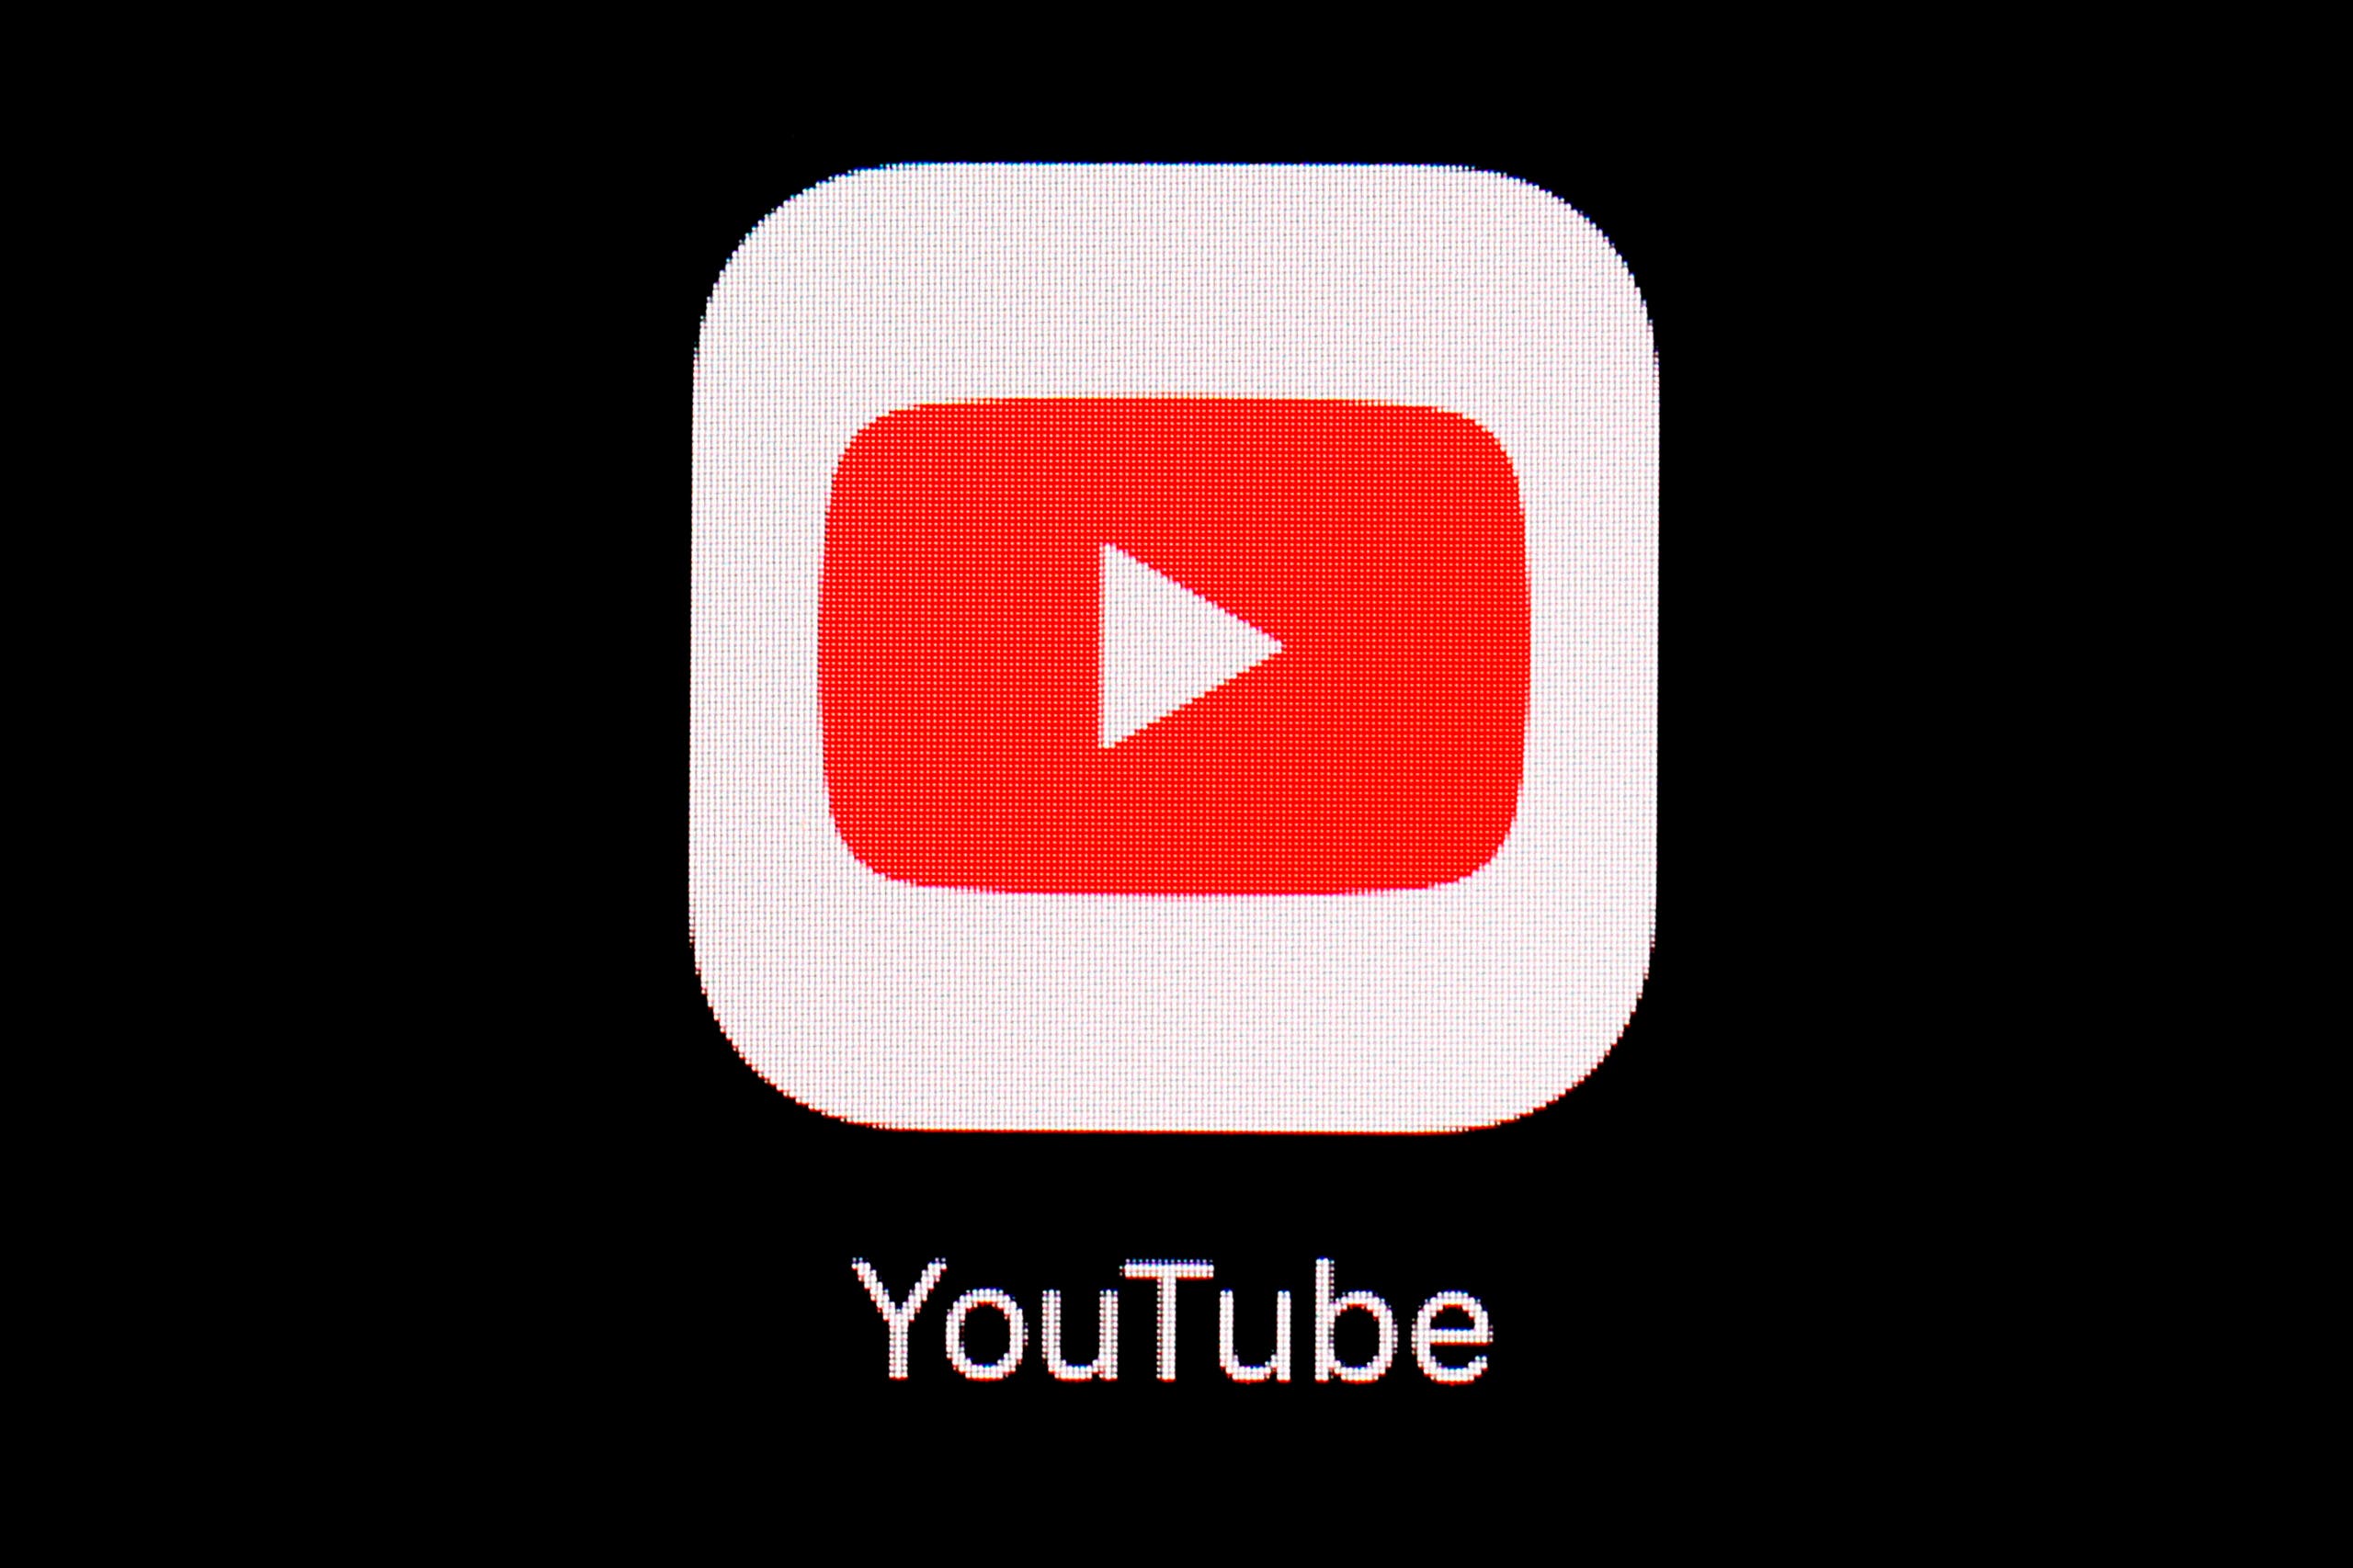 YouTube endurece su política de videos de armas con el fin de proteger a la juventud